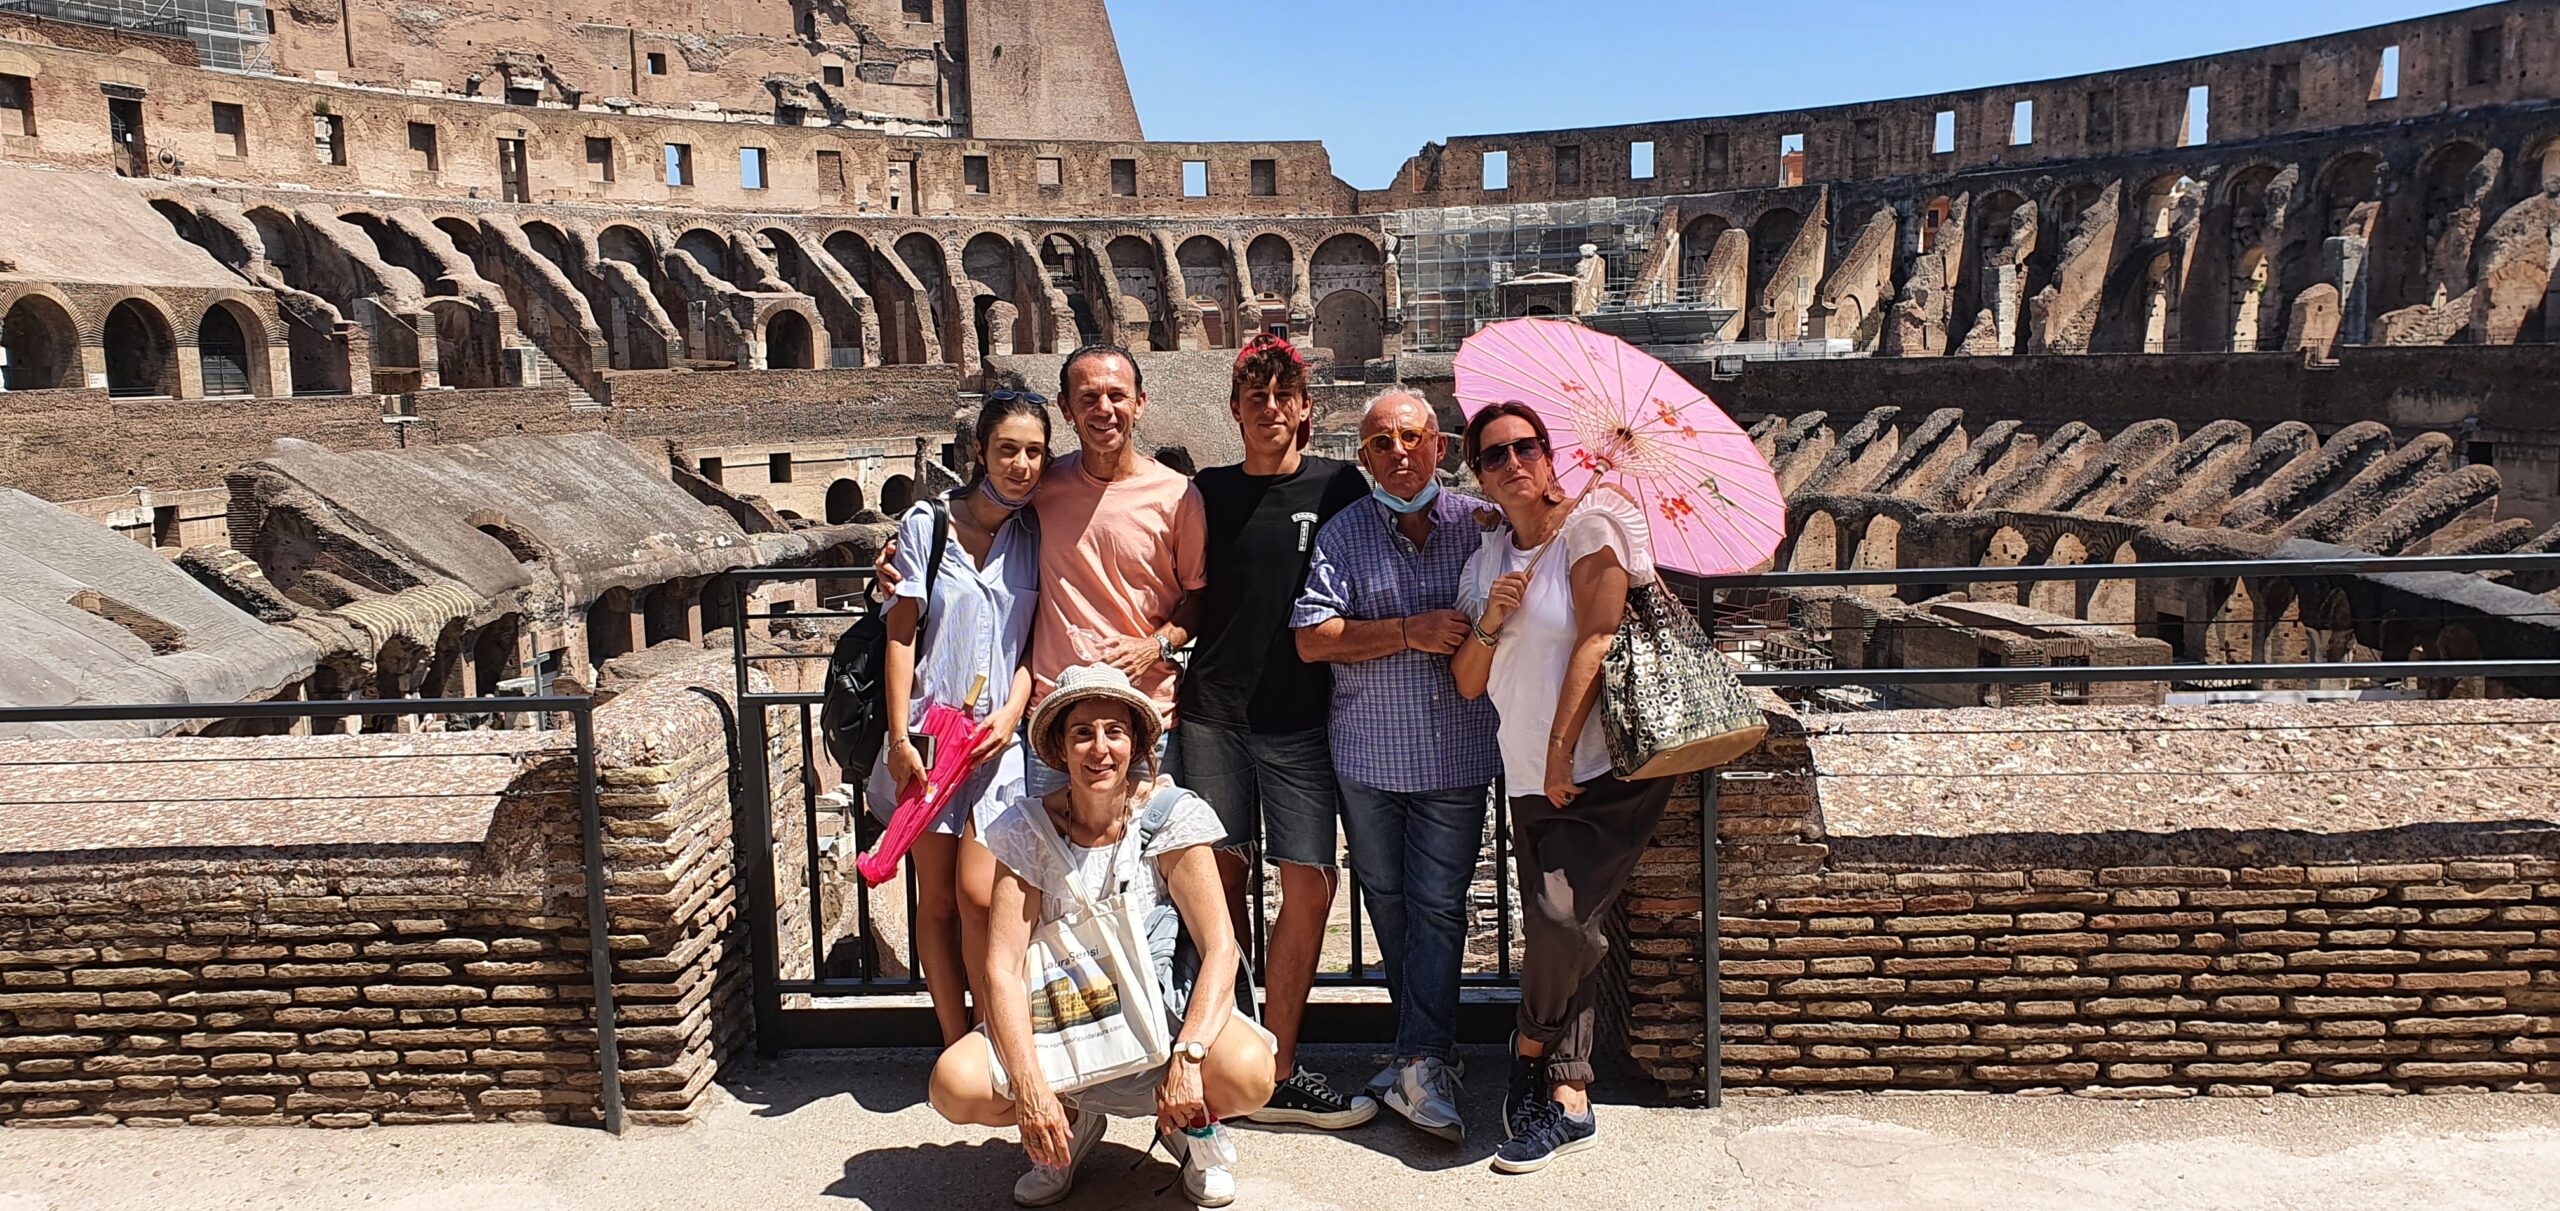 The Colosseum, Prati family